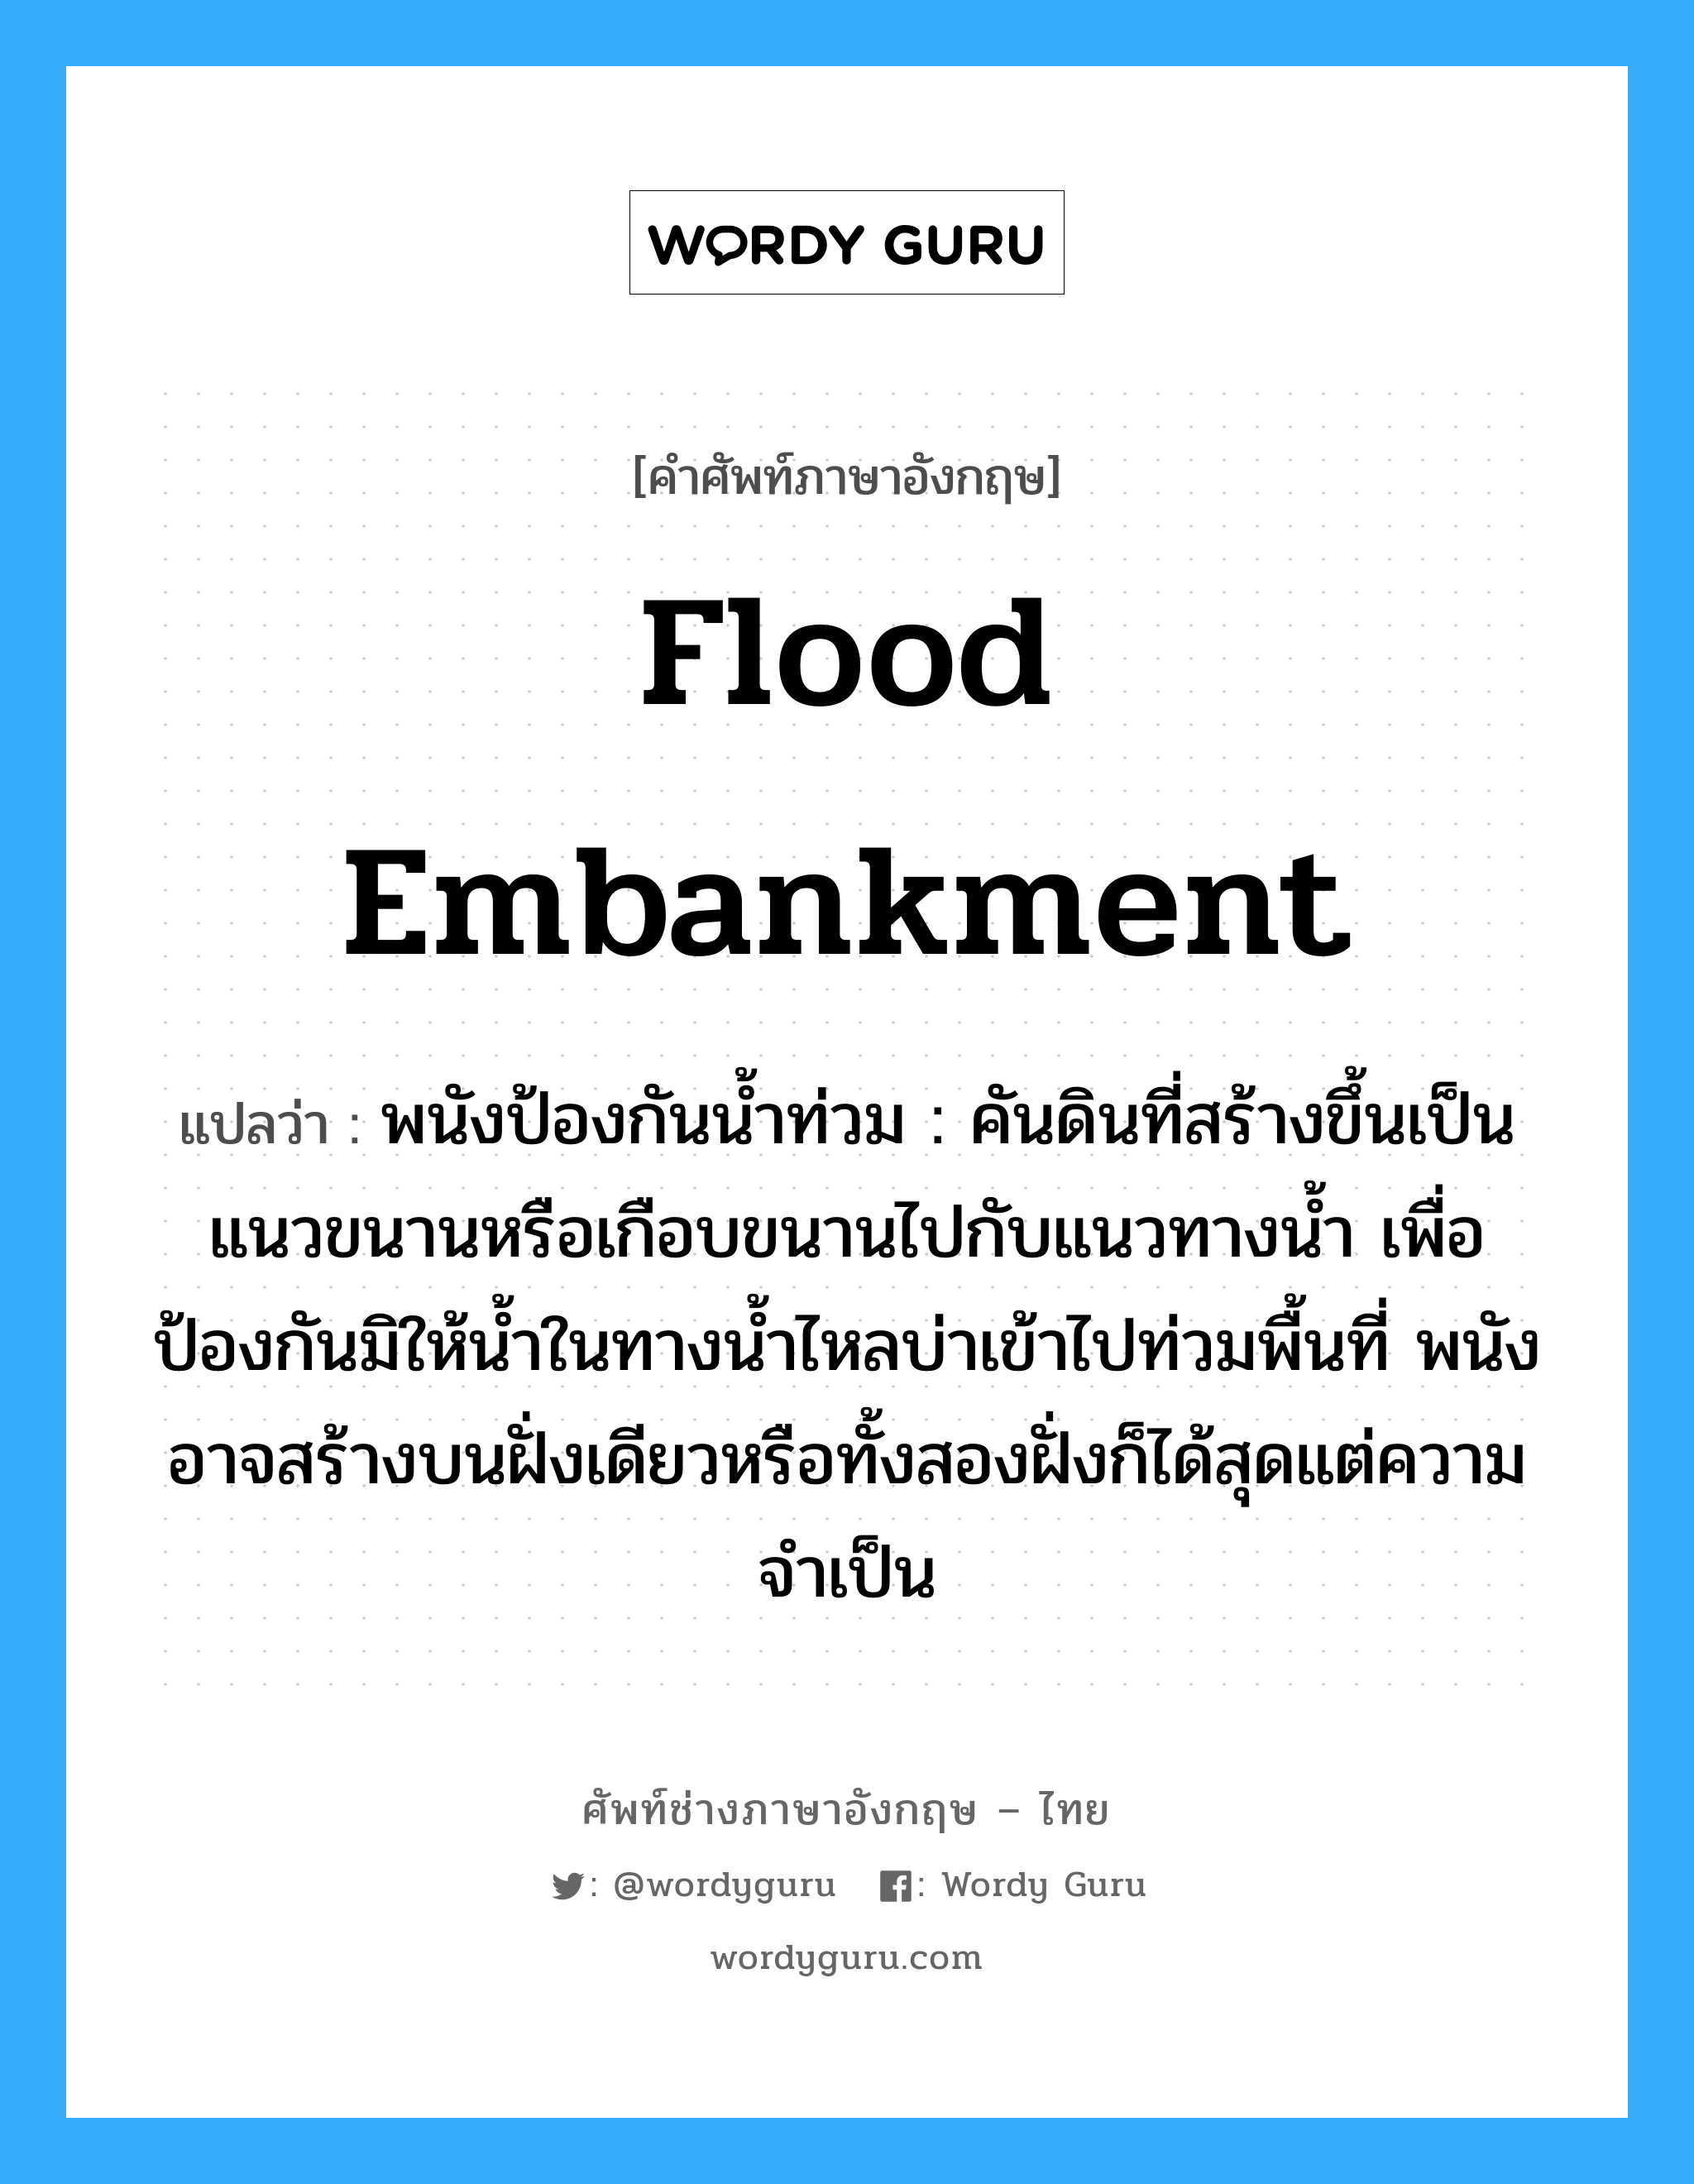 flood embankment แปลว่า?, คำศัพท์ช่างภาษาอังกฤษ - ไทย flood embankment คำศัพท์ภาษาอังกฤษ flood embankment แปลว่า พนังป้องกันน้ำท่วม : คันดินที่สร้างขึ้นเป็นแนวขนานหรือเกือบขนานไปกับแนวทางน้ำ เพื่อป้องกันมิให้น้ำในทางน้ำไหลบ่าเข้าไปท่วมพื้นที่ พนังอาจสร้างบนฝั่งเดียวหรือทั้งสองฝั่งก็ได้สุดแต่ความจำเป็น